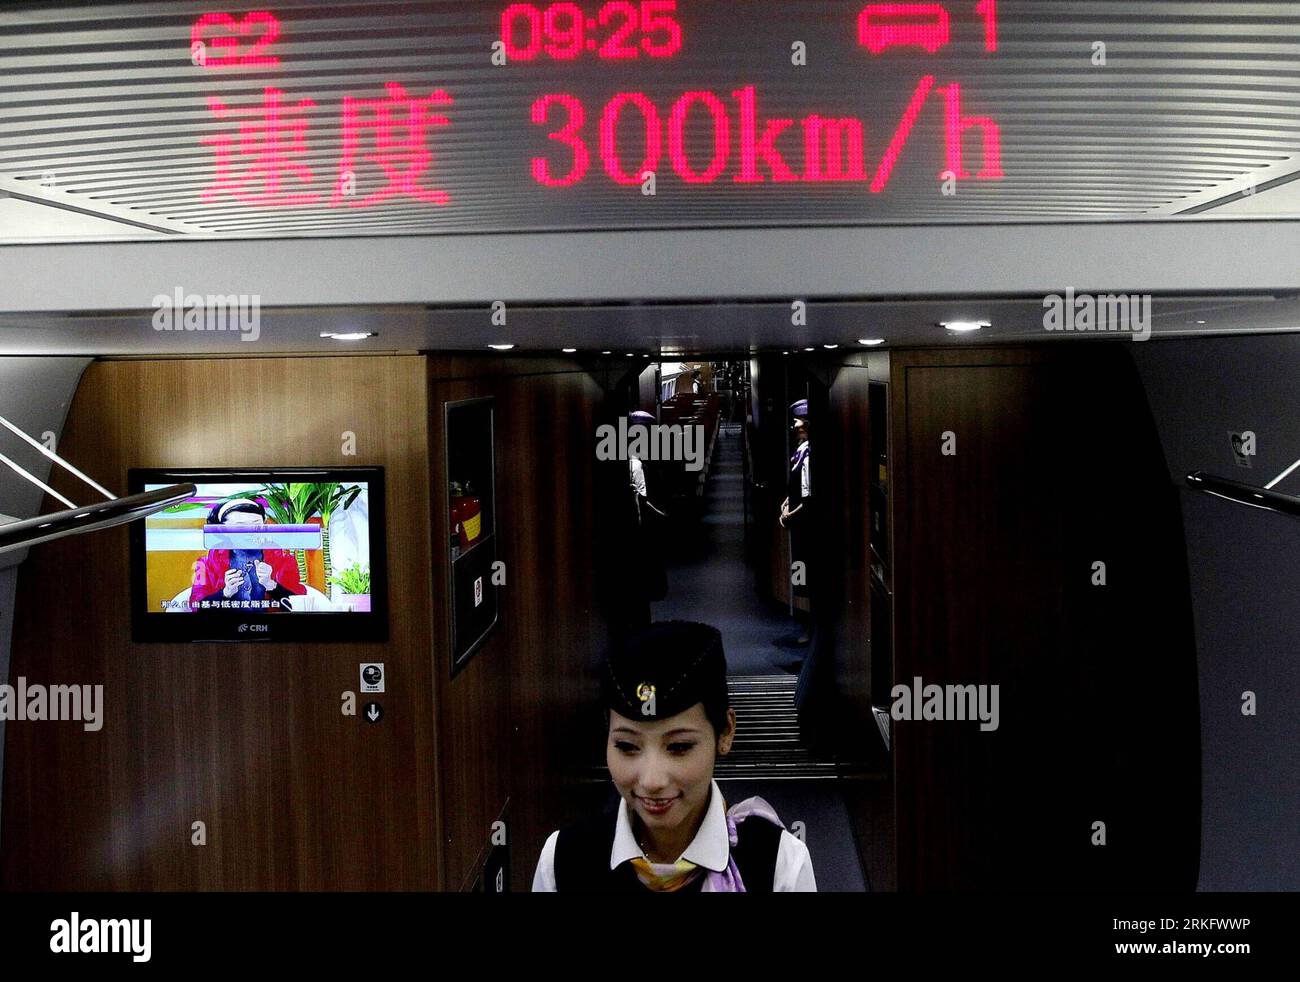 Bildnummer: 55463539 Datum: 16.06.2011 Copyright: imago/Xinhua (110616) -- SHANGHAI, 16. Juni 2011 (Xinhua) -- das LED-Display zeigt die Geschwindigkeit des CRH380A-Zuglaufs auf der Hochgeschwindigkeitsbahn, die Peking mit Shanghai verbindet, während der Probefahrt am 16. Juni 2011 an. Der Hochgeschwindigkeitszug, der Peking, die Hauptstadt Chinas, mit Shanghai, der ostchinesischen Gemeinde, verbindet, wird offiziell Ende Juni beginnen. (Xinhua/Chen Fei) (xzj) CHINA-HIGH SPEED RAILWAY-EXPERIENCE (CN) PUBLICATIONxNOTxINxCHN Gesellschaft Fotostory Verkehr Bahn Hochgeschwindigkeitszug xub 2011 quer premiumd o0 Zug, Stockfoto